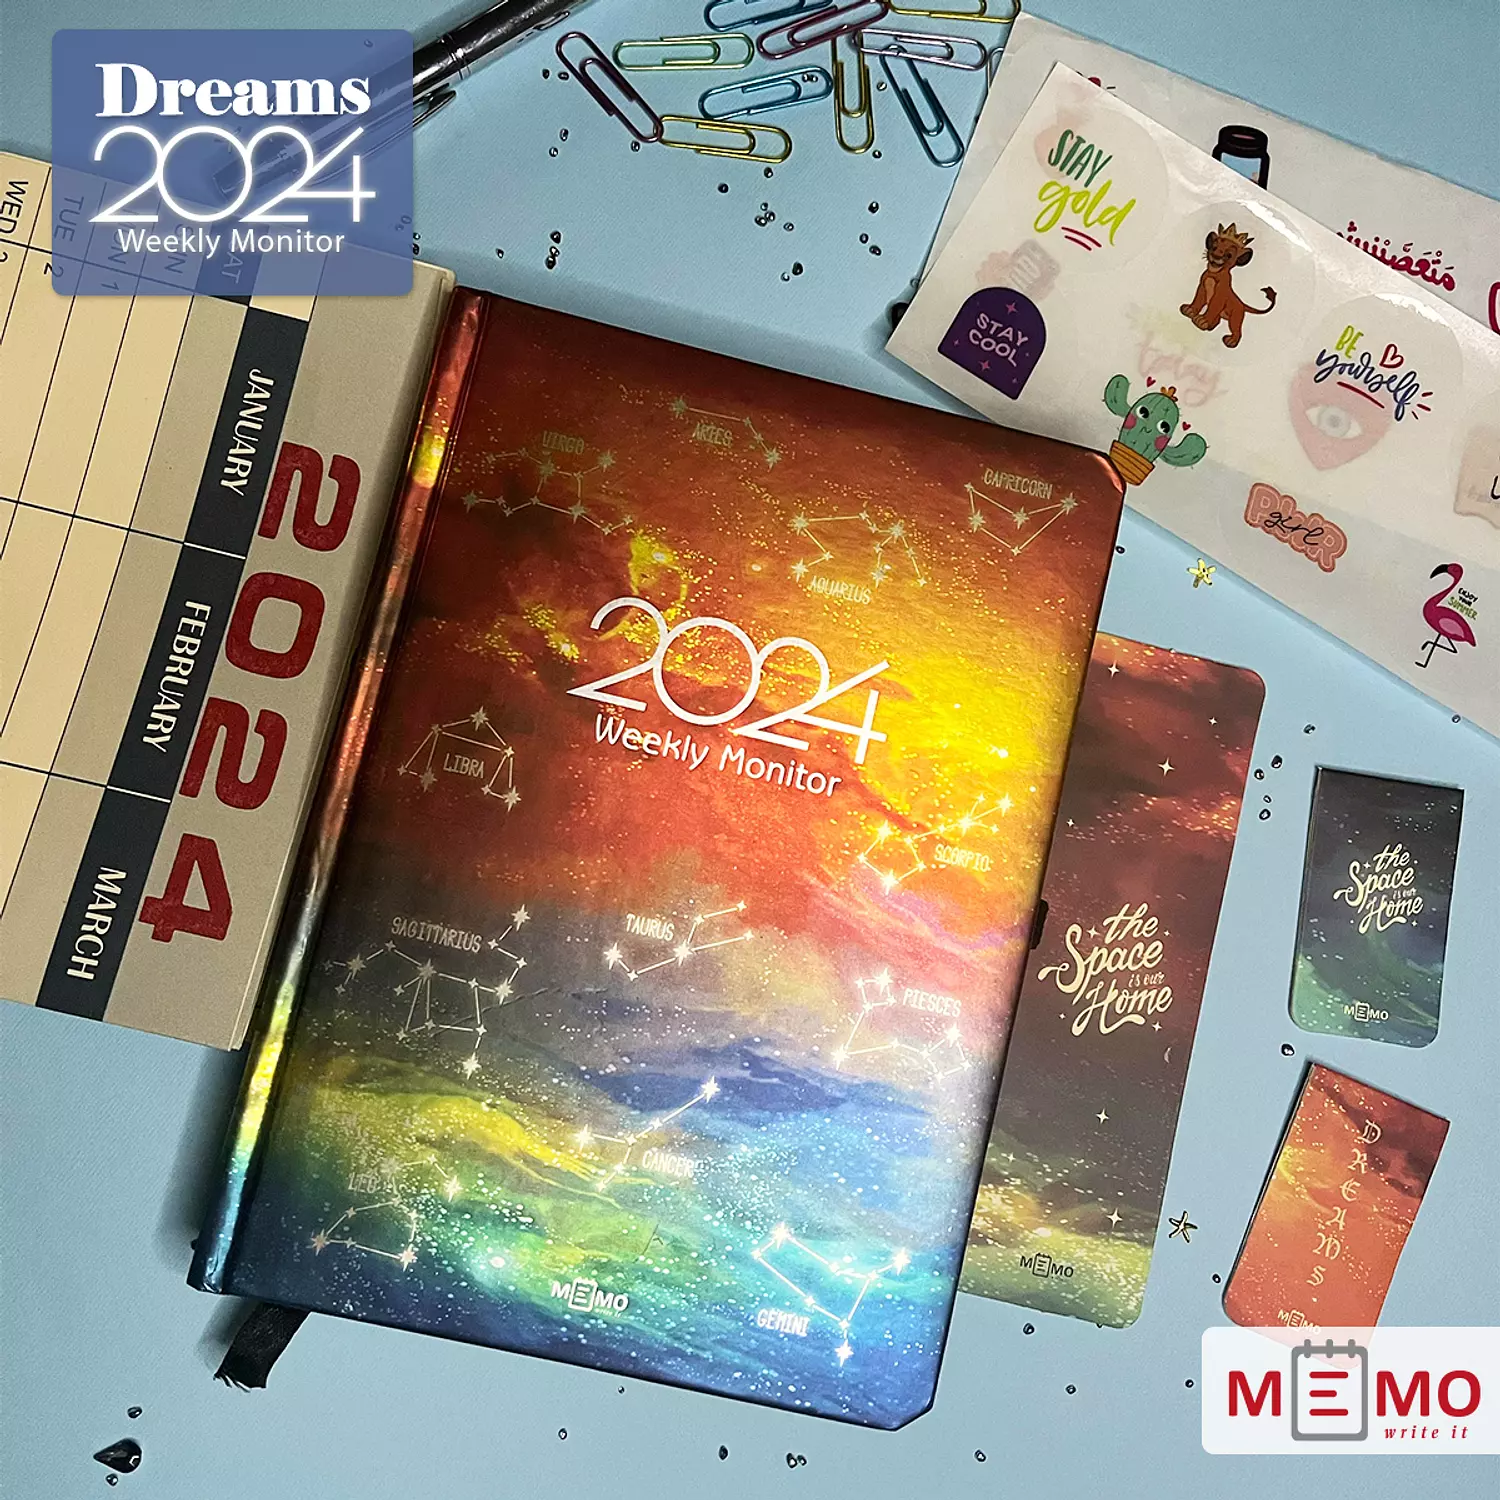  Memo Weekly Monitor 2024 (Dreams) 3